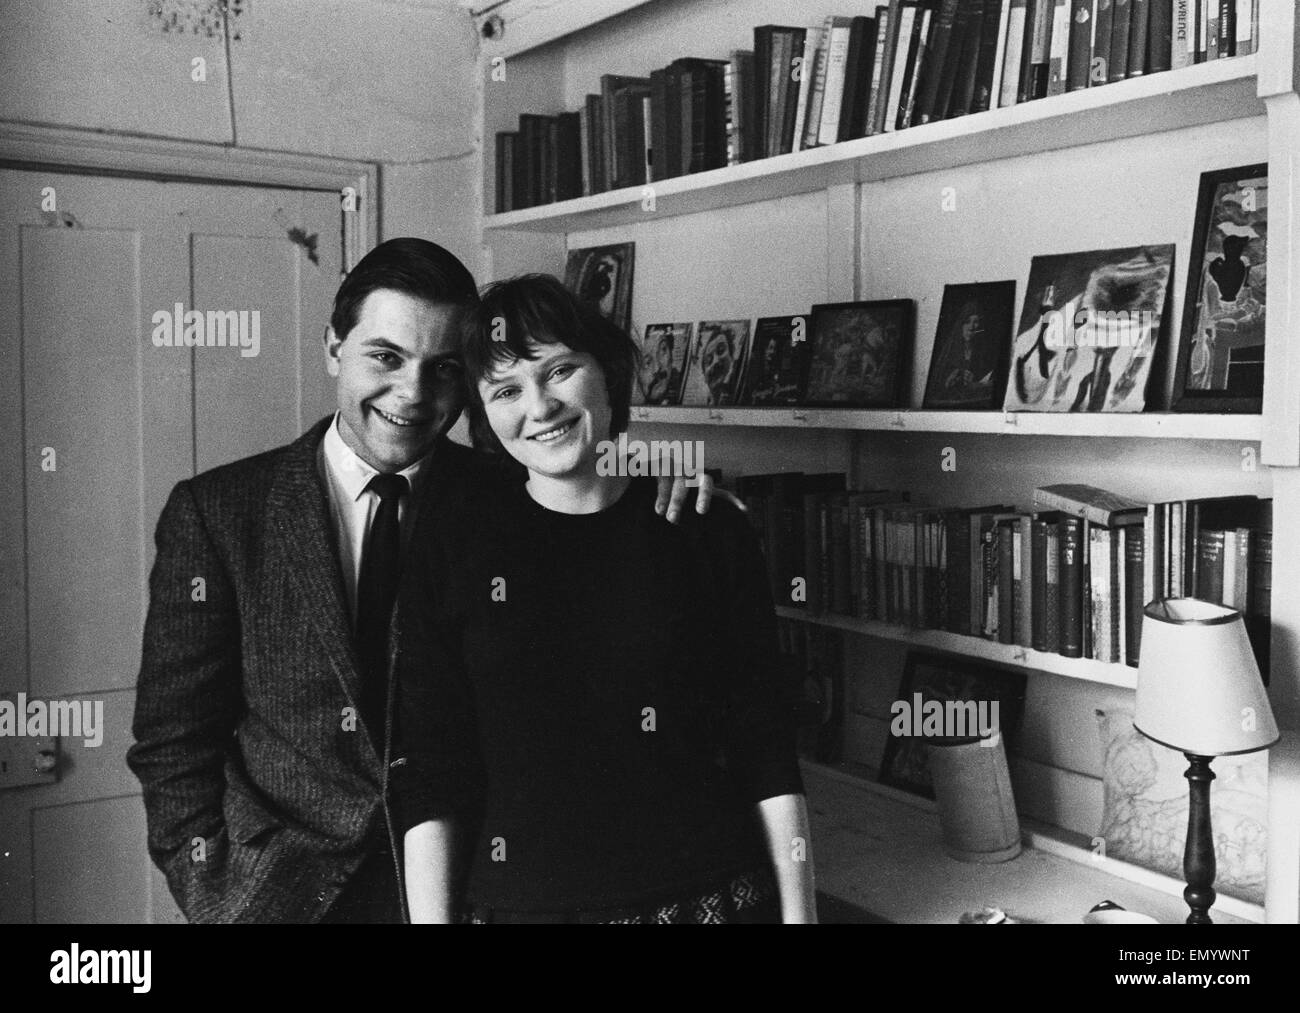 Bernadine Wall, war ein Zeuge in der Obszönität Studie für D.H. Lawrence Buch "Lady Chatterley es Lover', im Bild mit ihrem Verlobten Stephen Bishop. 16. April 1961. Stockfoto